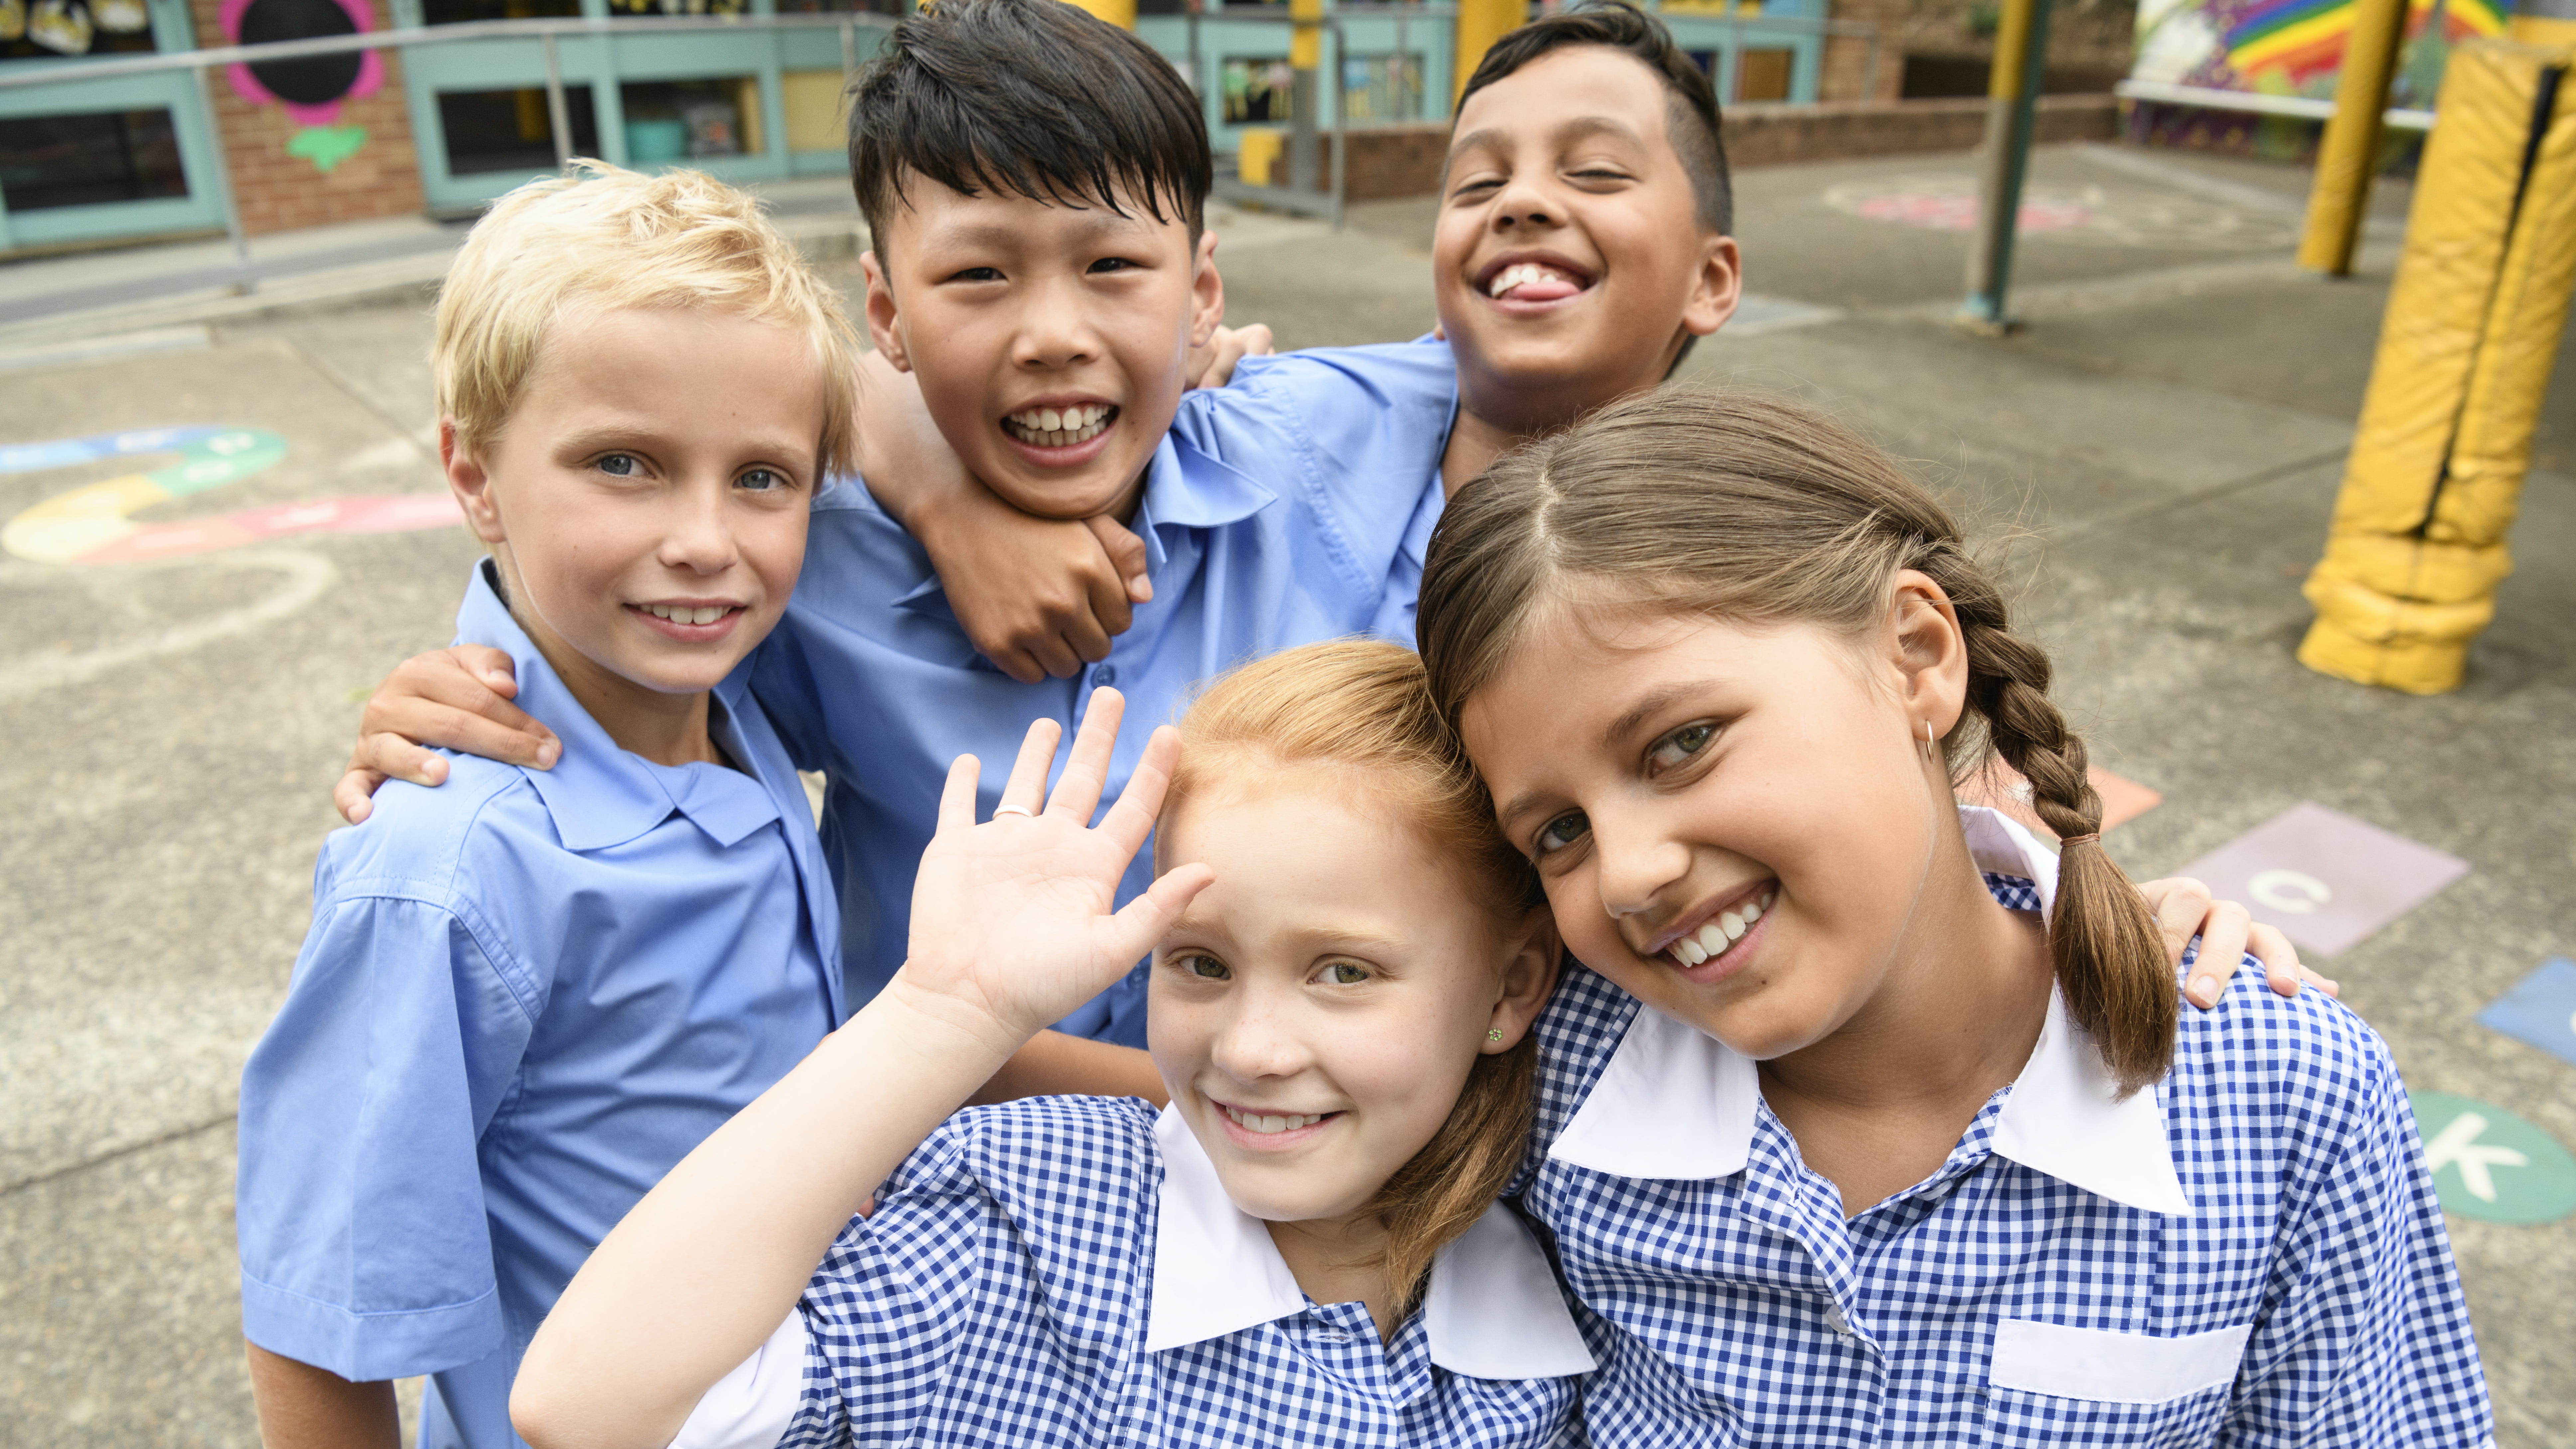 School aged children smiling in their school uniforms